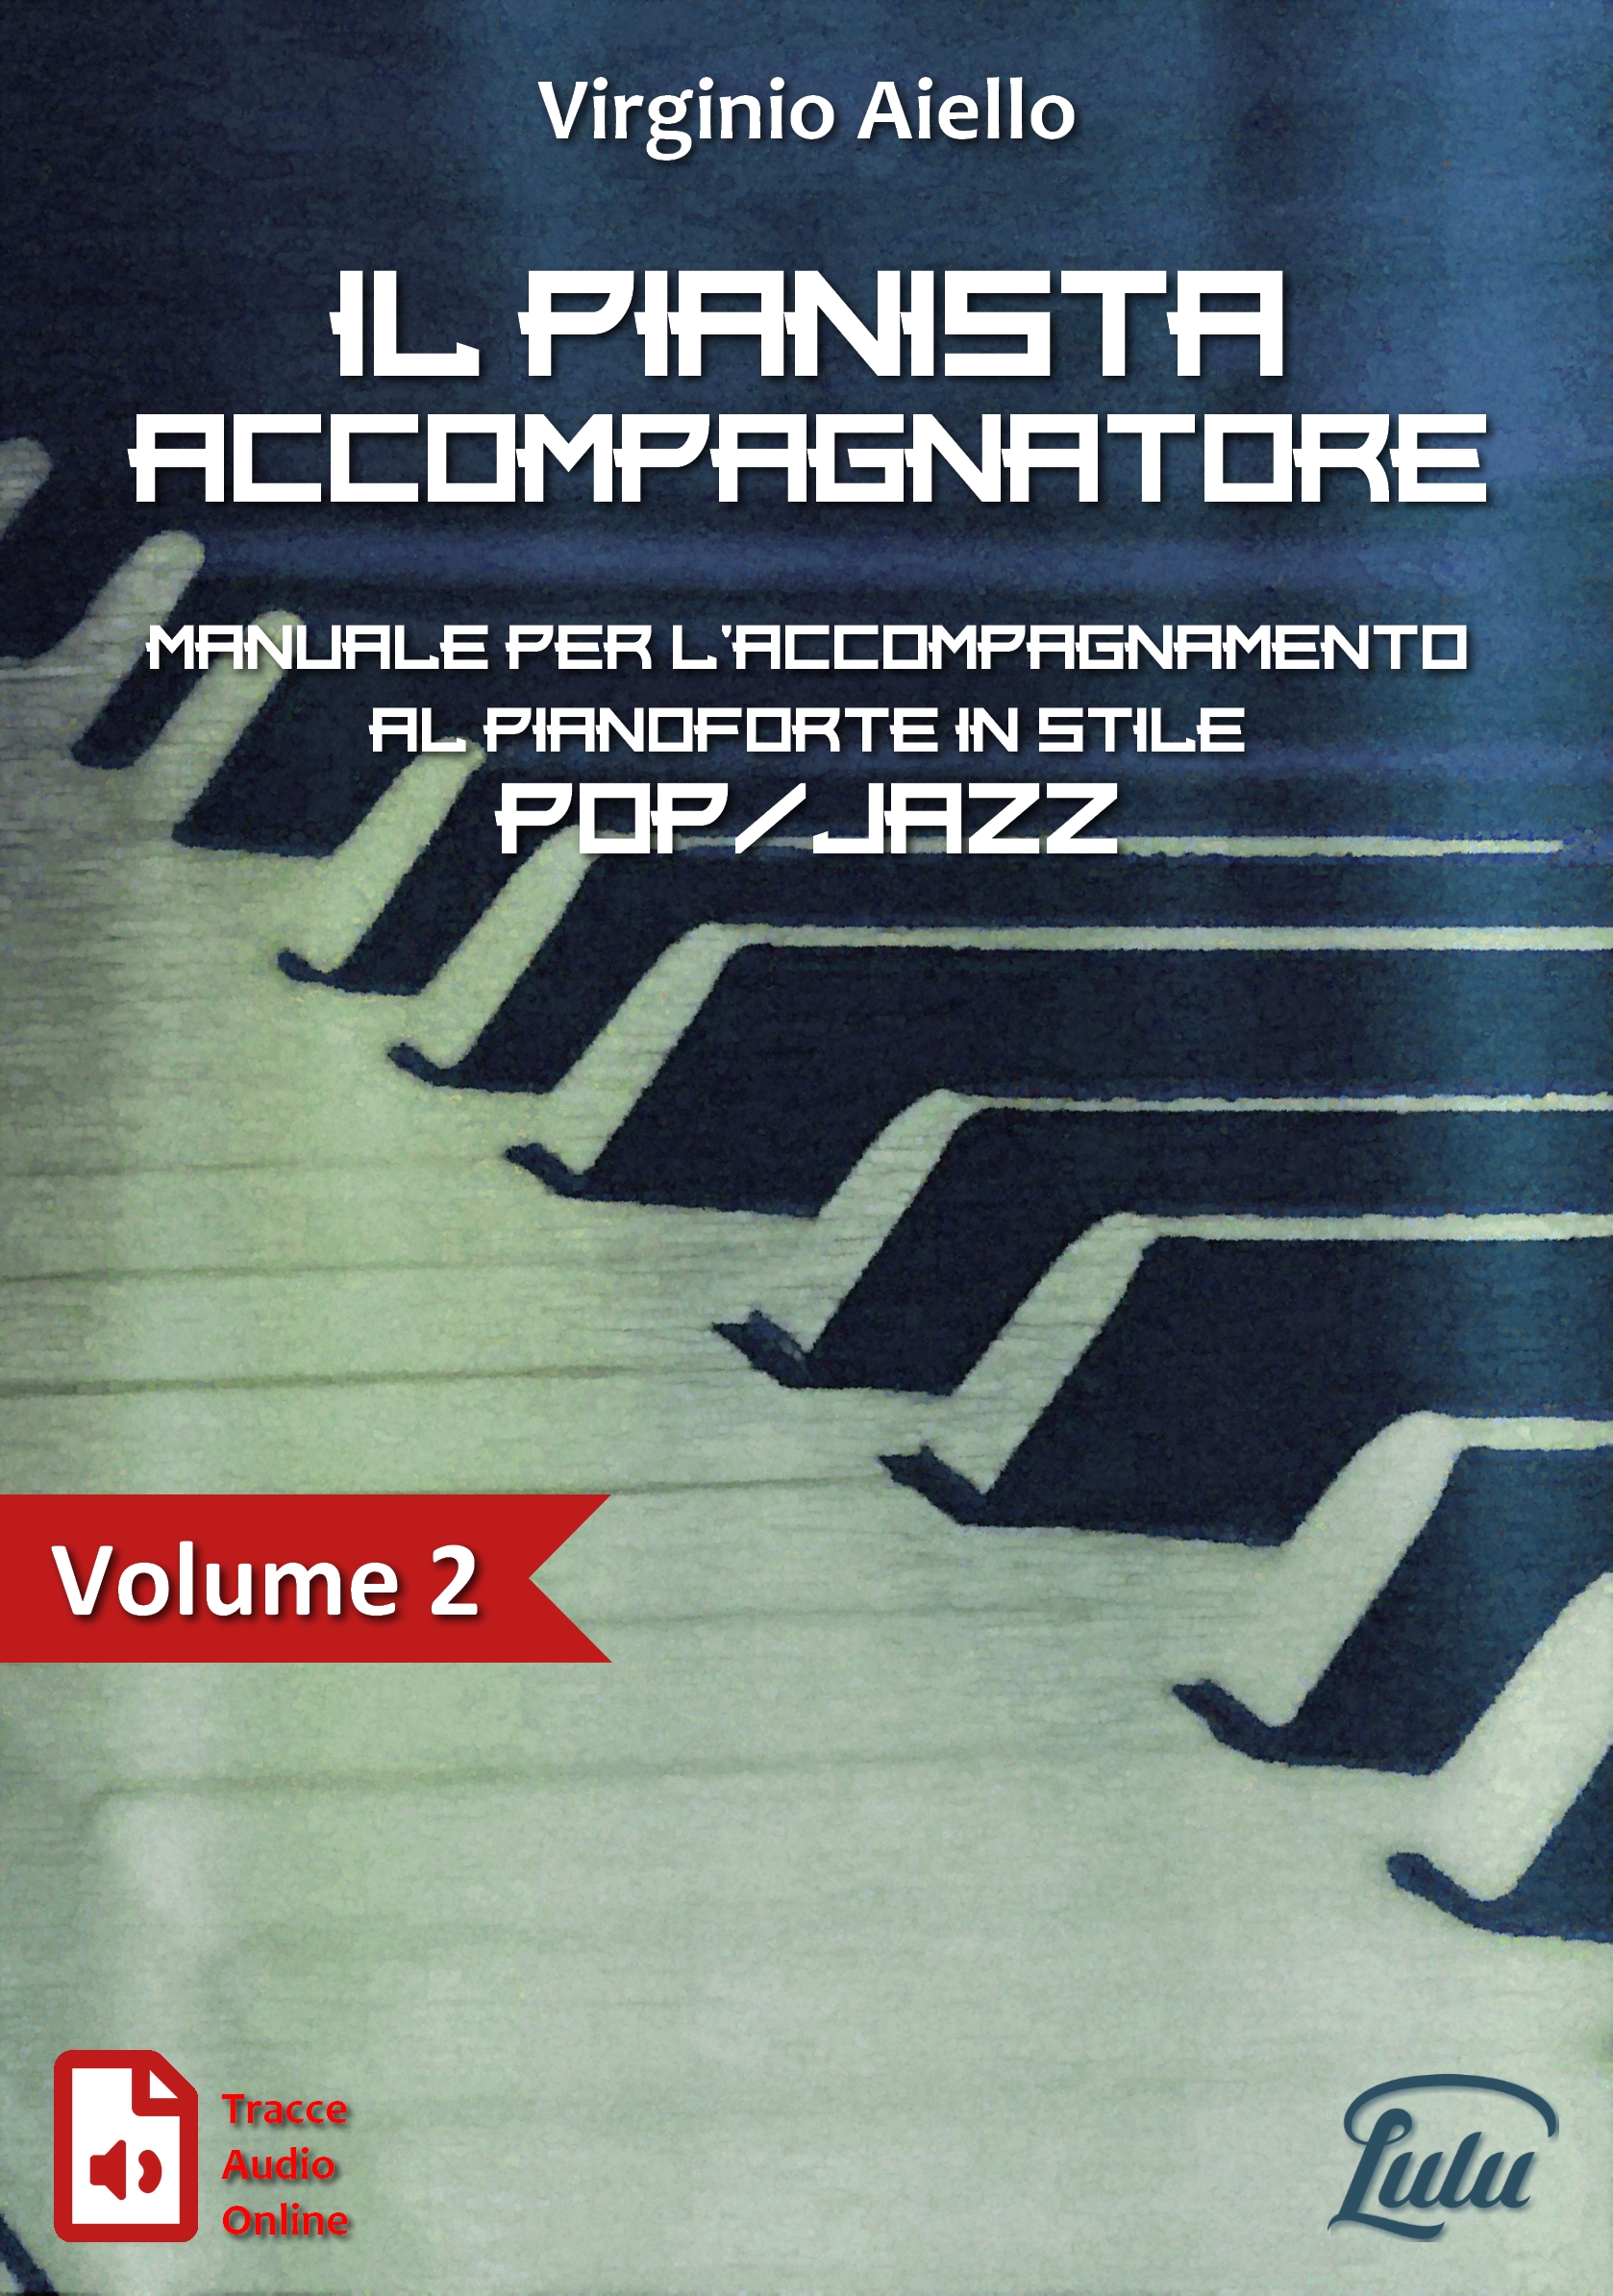 IL PIANISTA ACCOMPAGNATORE VOL.2 - Manuale per l’accompagnamento al pianoforte in stile Pop/Jazz